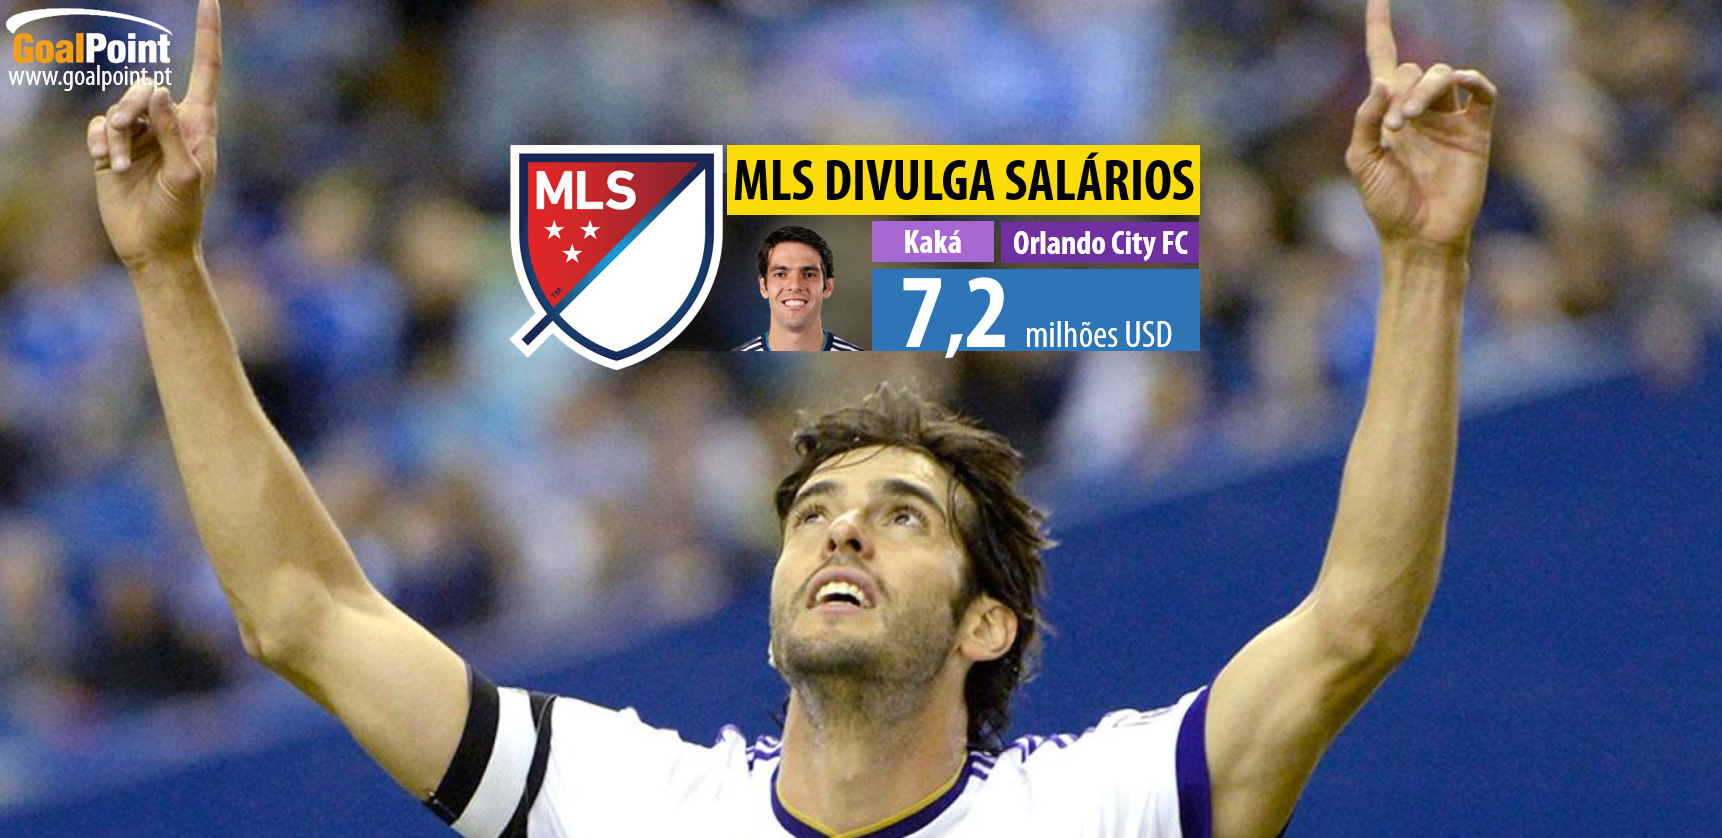 MLS revela salários dos jogadores